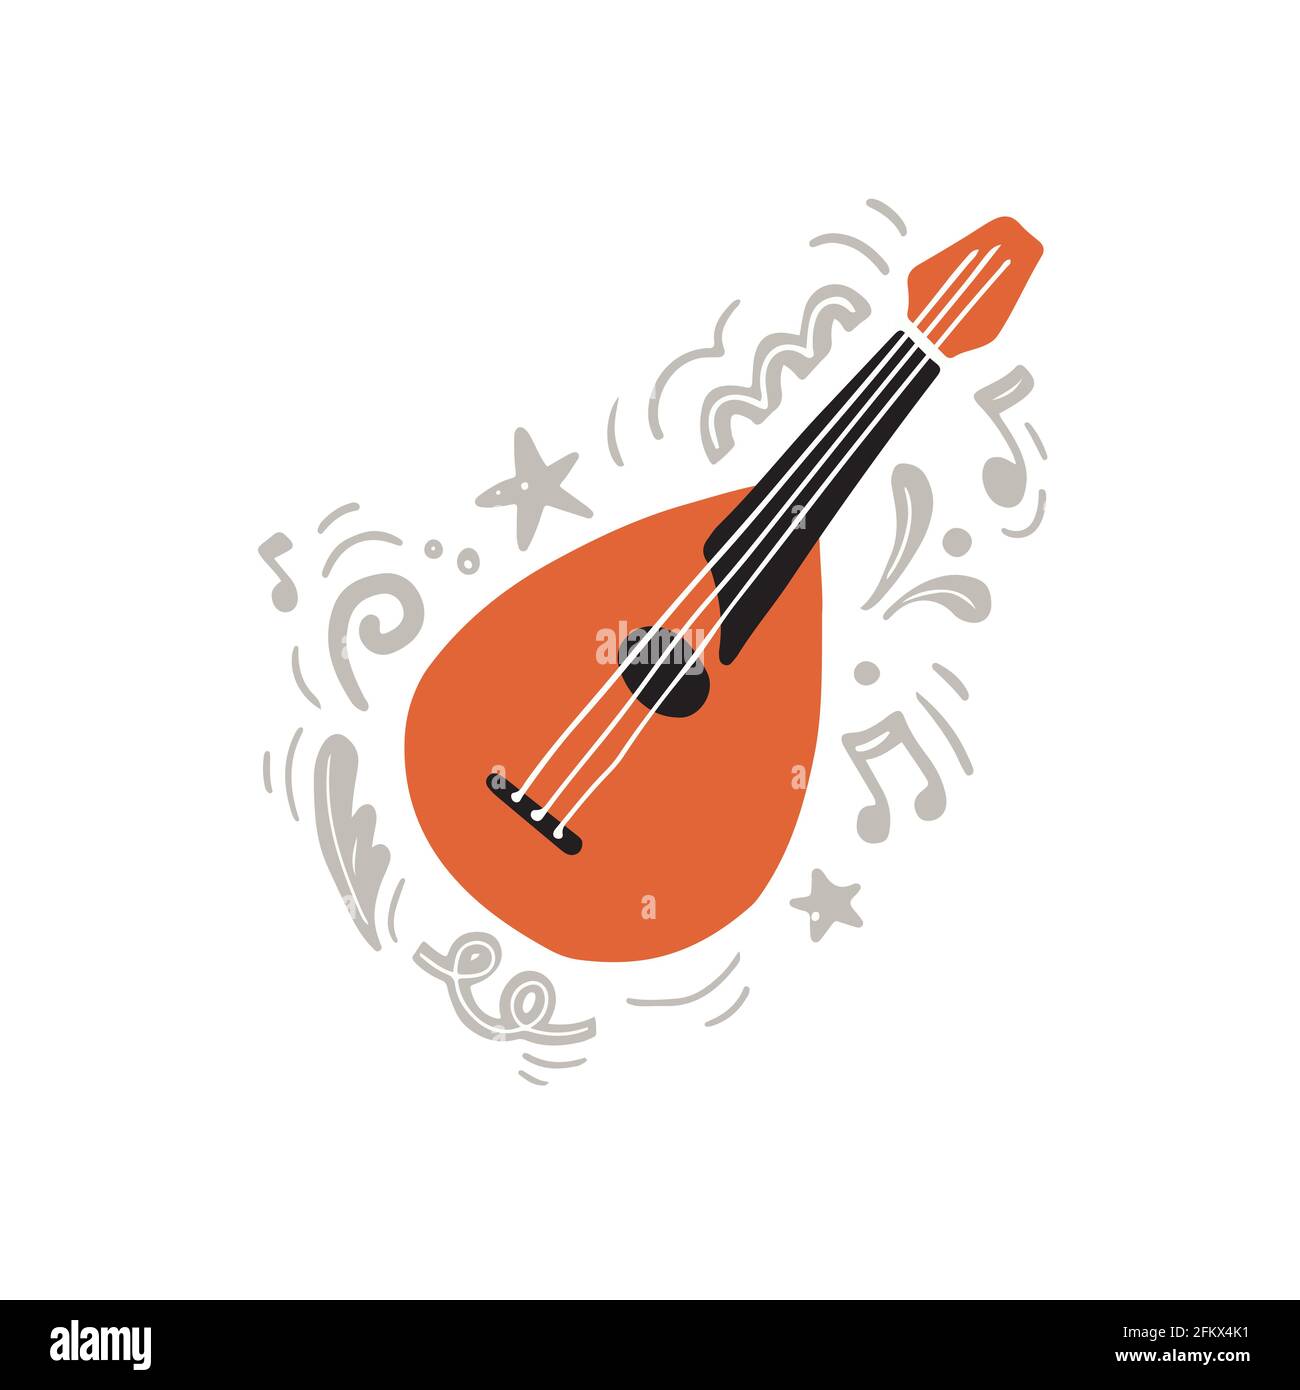 Instrument traditionnel à cordes appelé mandoline dessiné à la main avec un plat minimaliste style dans les couleurs orange et noir au milieu des ornements créatifs gris et des notes comme symbole de la création musicale Illustration de Vecteur